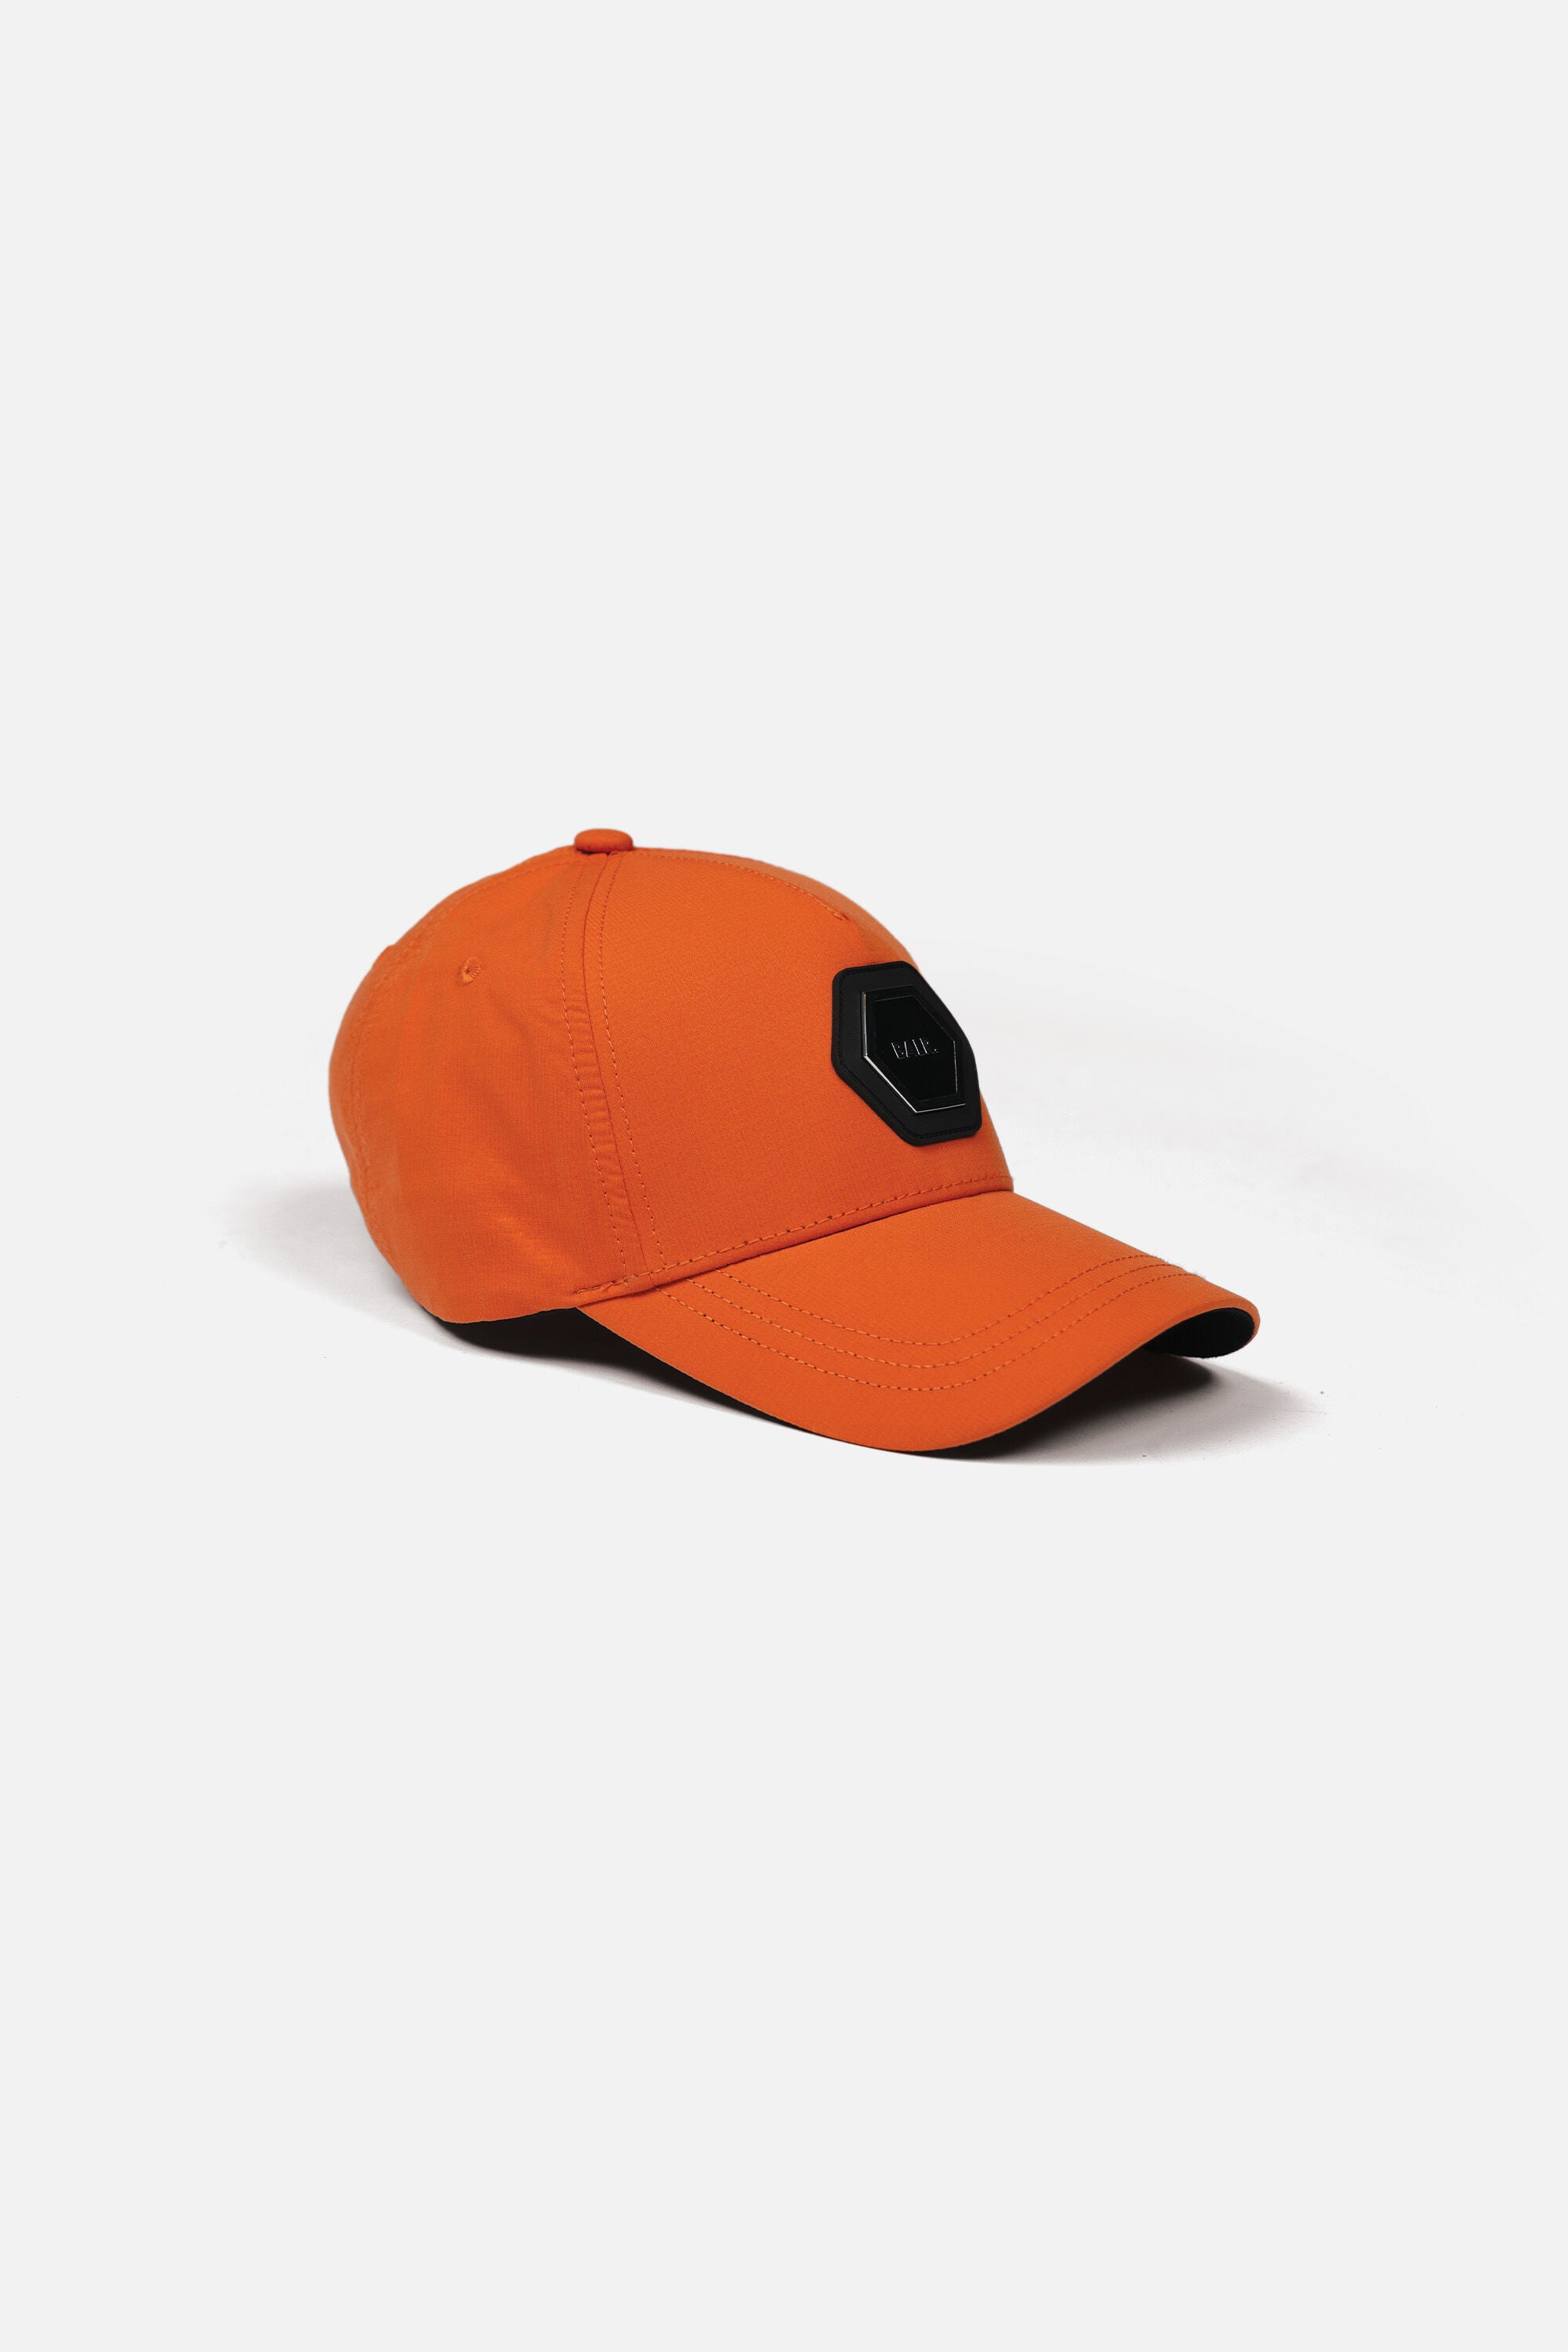 Hexline Classic Cap Orange – BALR.